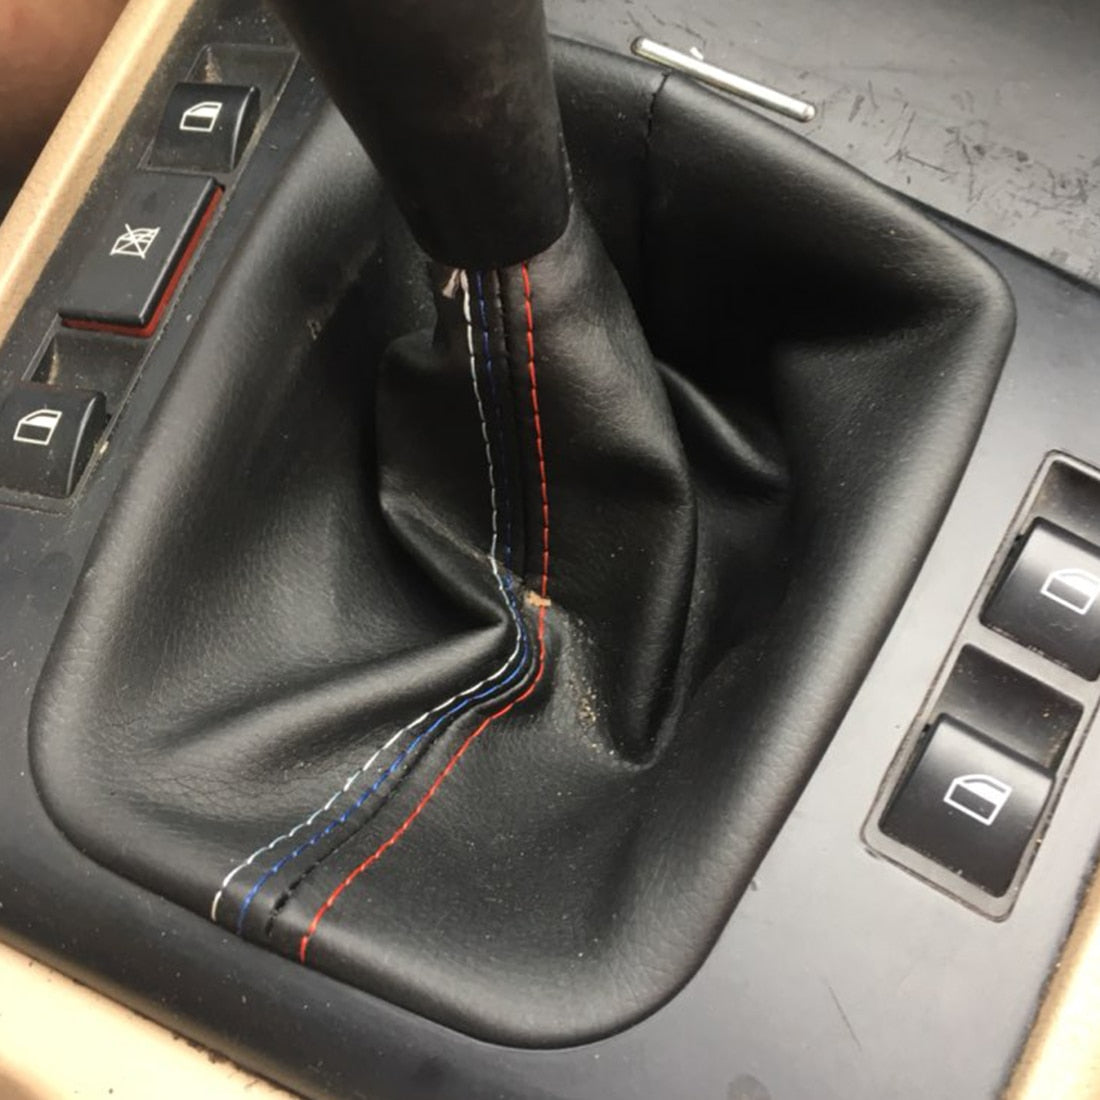 Gear Shift Collar Leather Handbrake Boot Cover Case For BMW E46, E30, E34, E36, E46, Z3